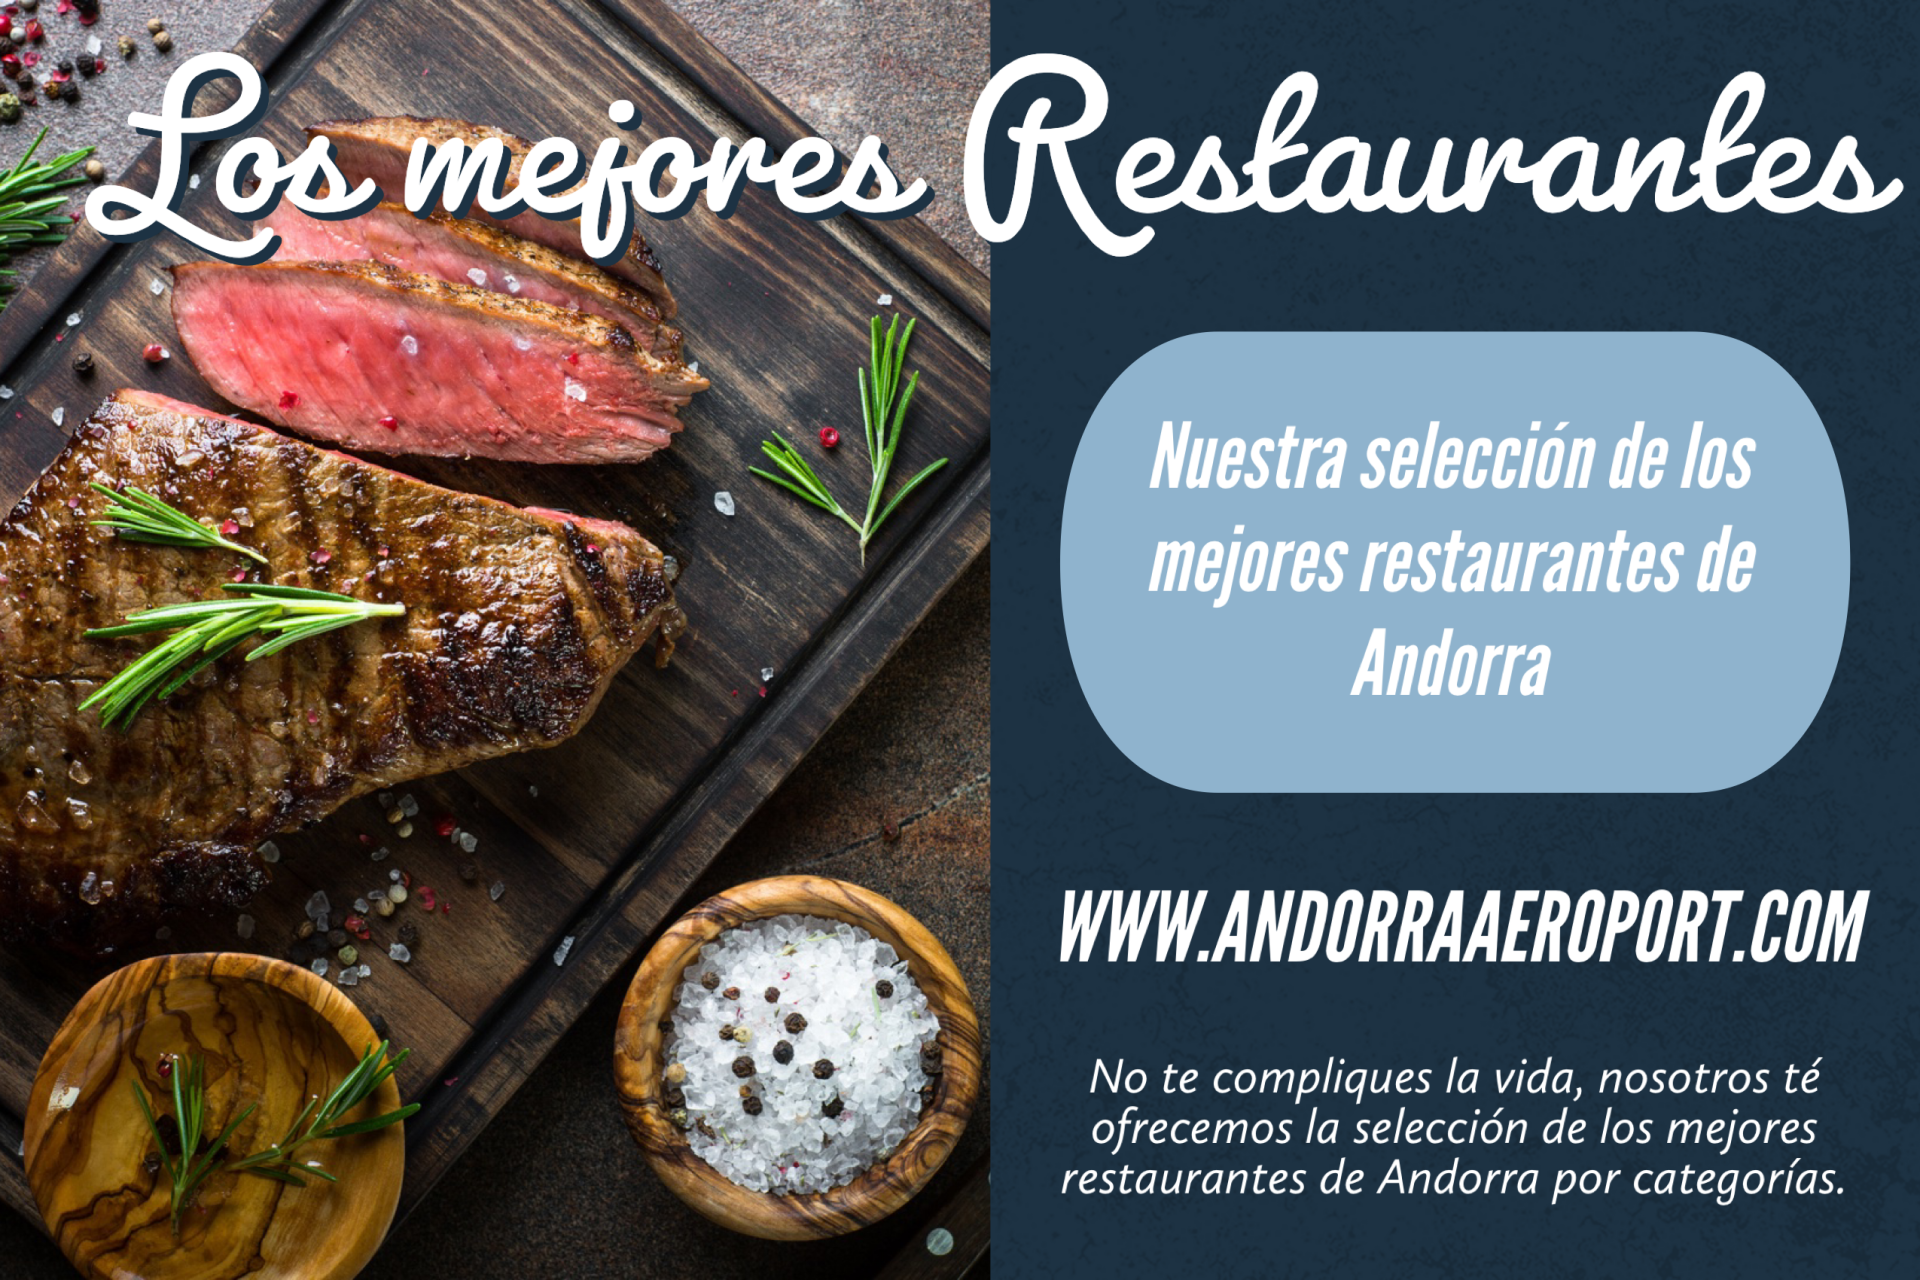 Los mejores restaurantes de Andorra